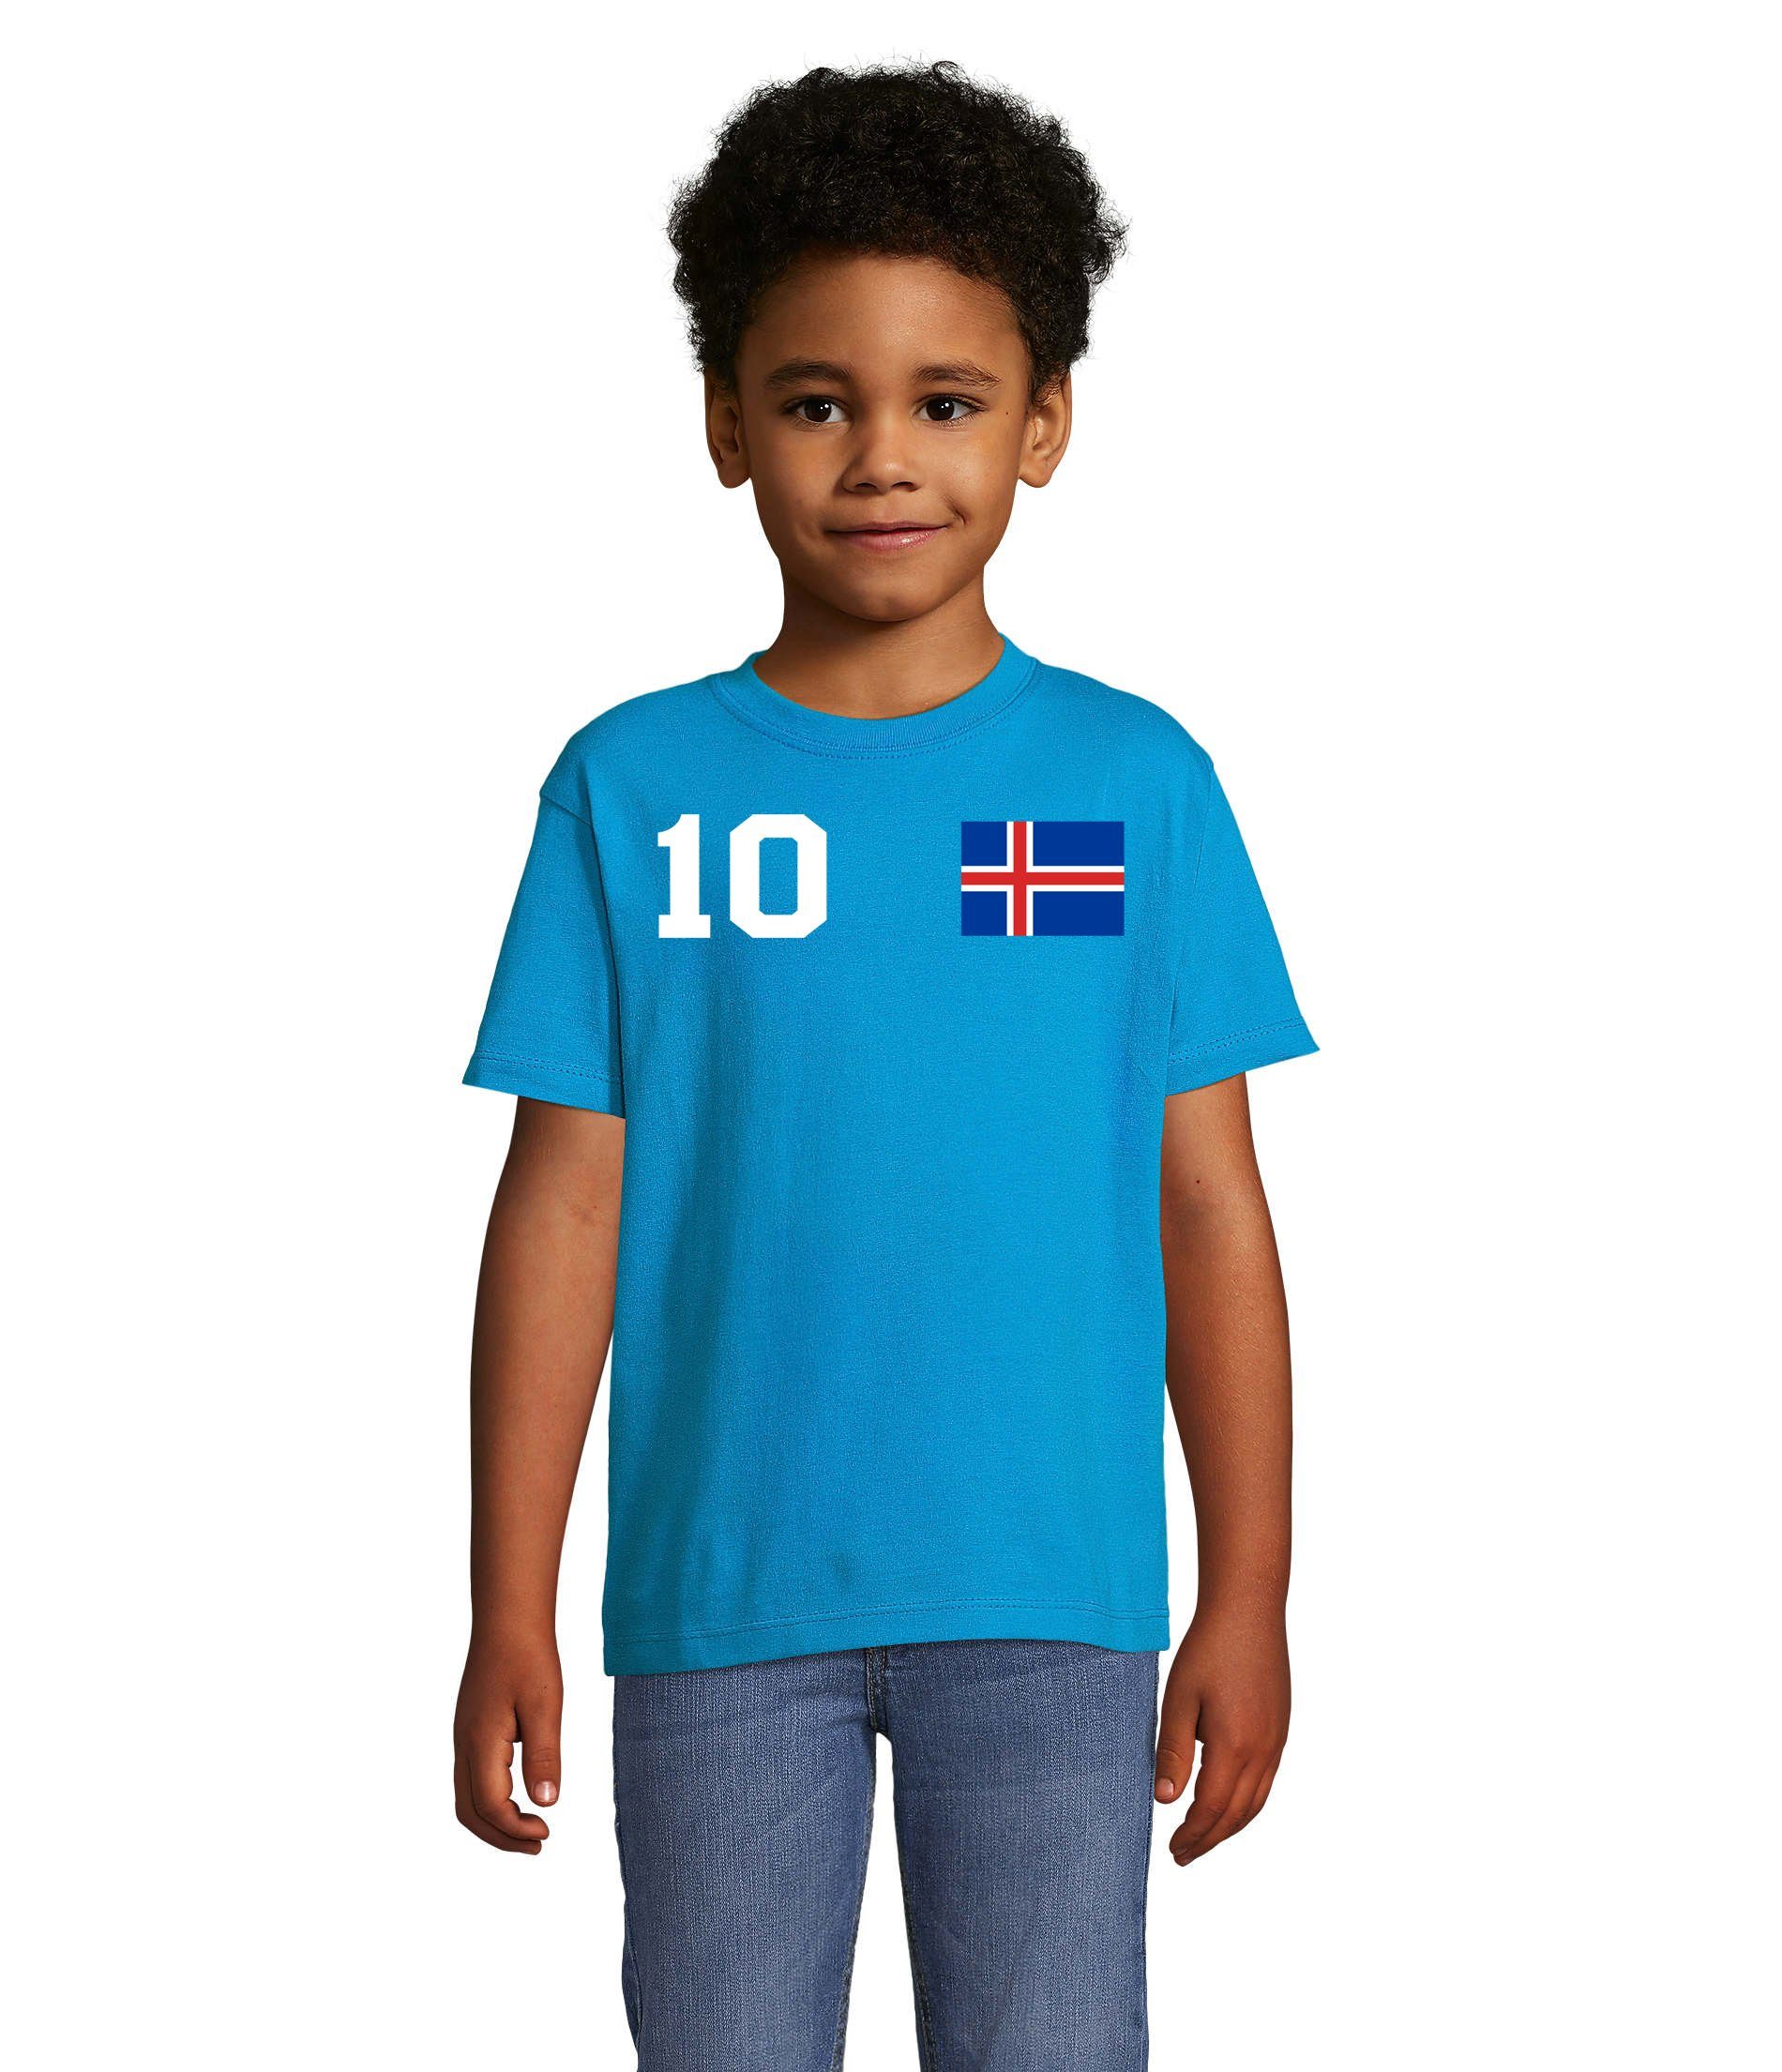 T-Shirt Island Iceland Blondie WM Weiss/Blau Handball Brownie Trikot Meister & Fußball Kinder EM Sport